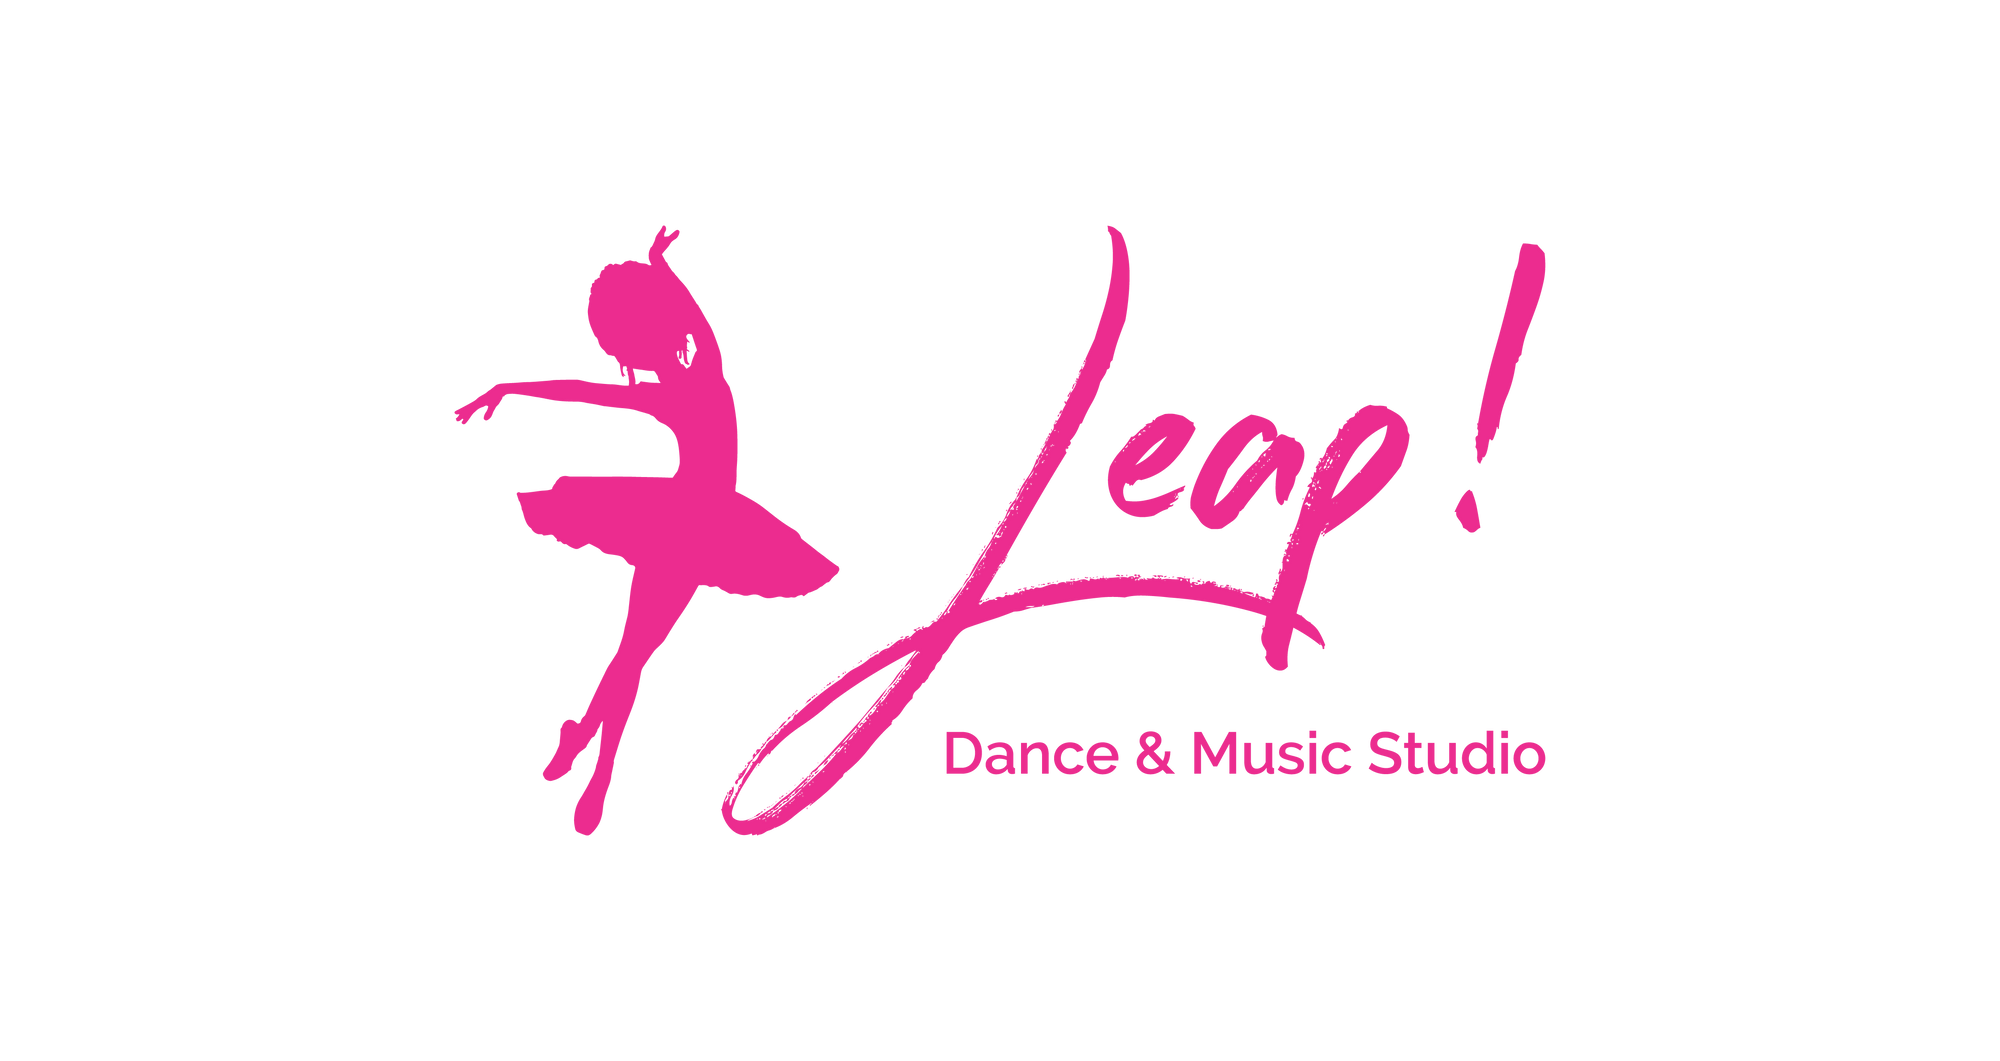 Leap! Dance & Music Studio - Annia Elena Ballagas Negrete